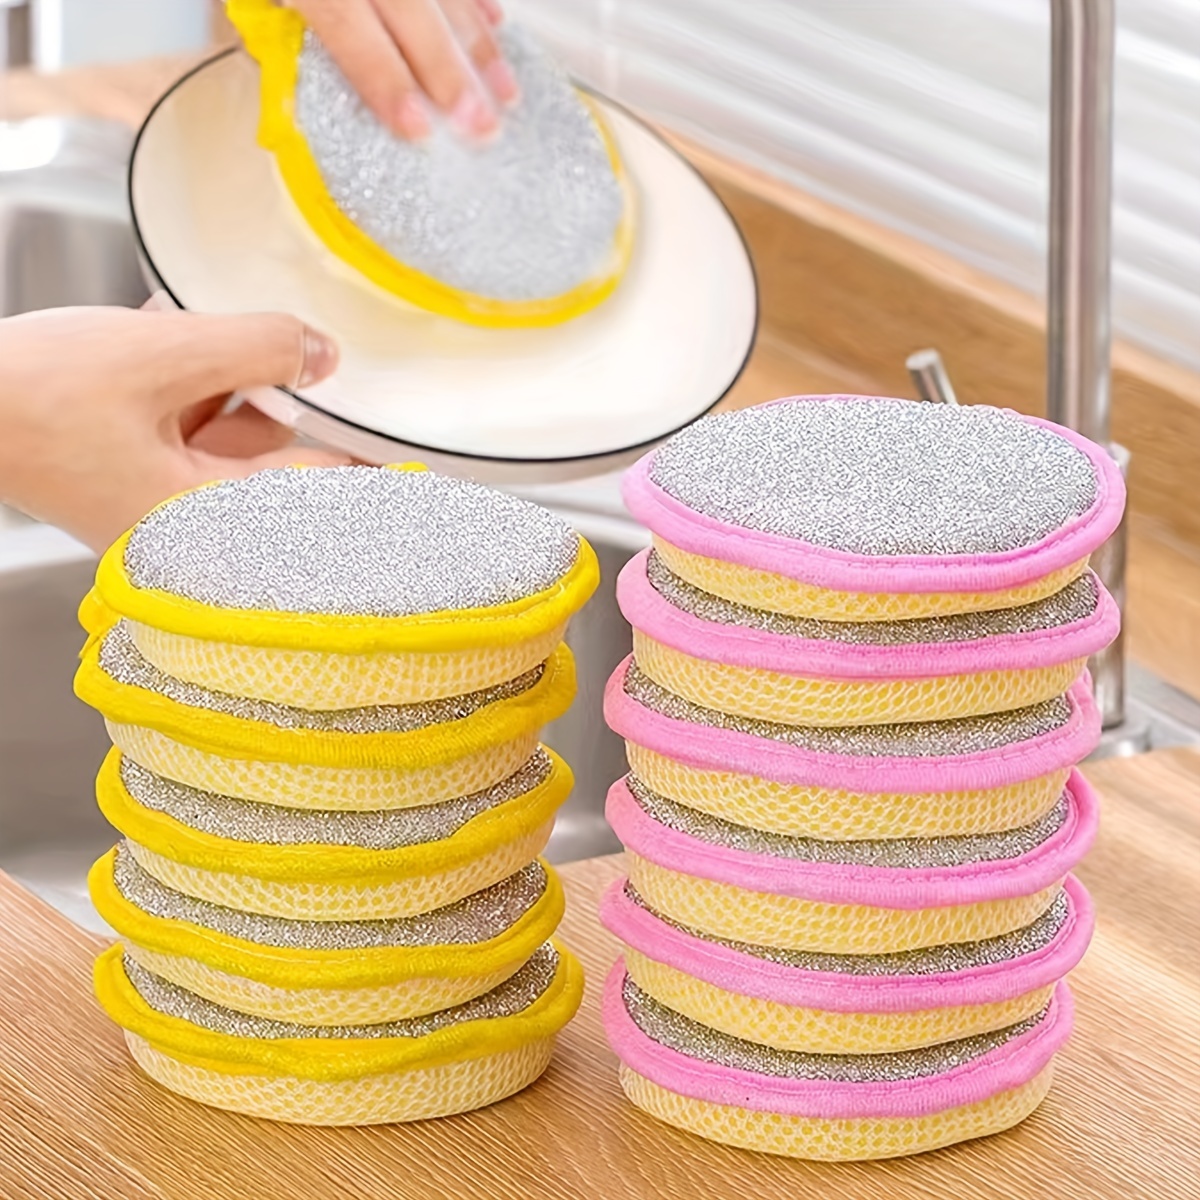 10pcs Double-sided Kitchen Sponge, Dishwashing Sponge- For Kitchen Cleaning